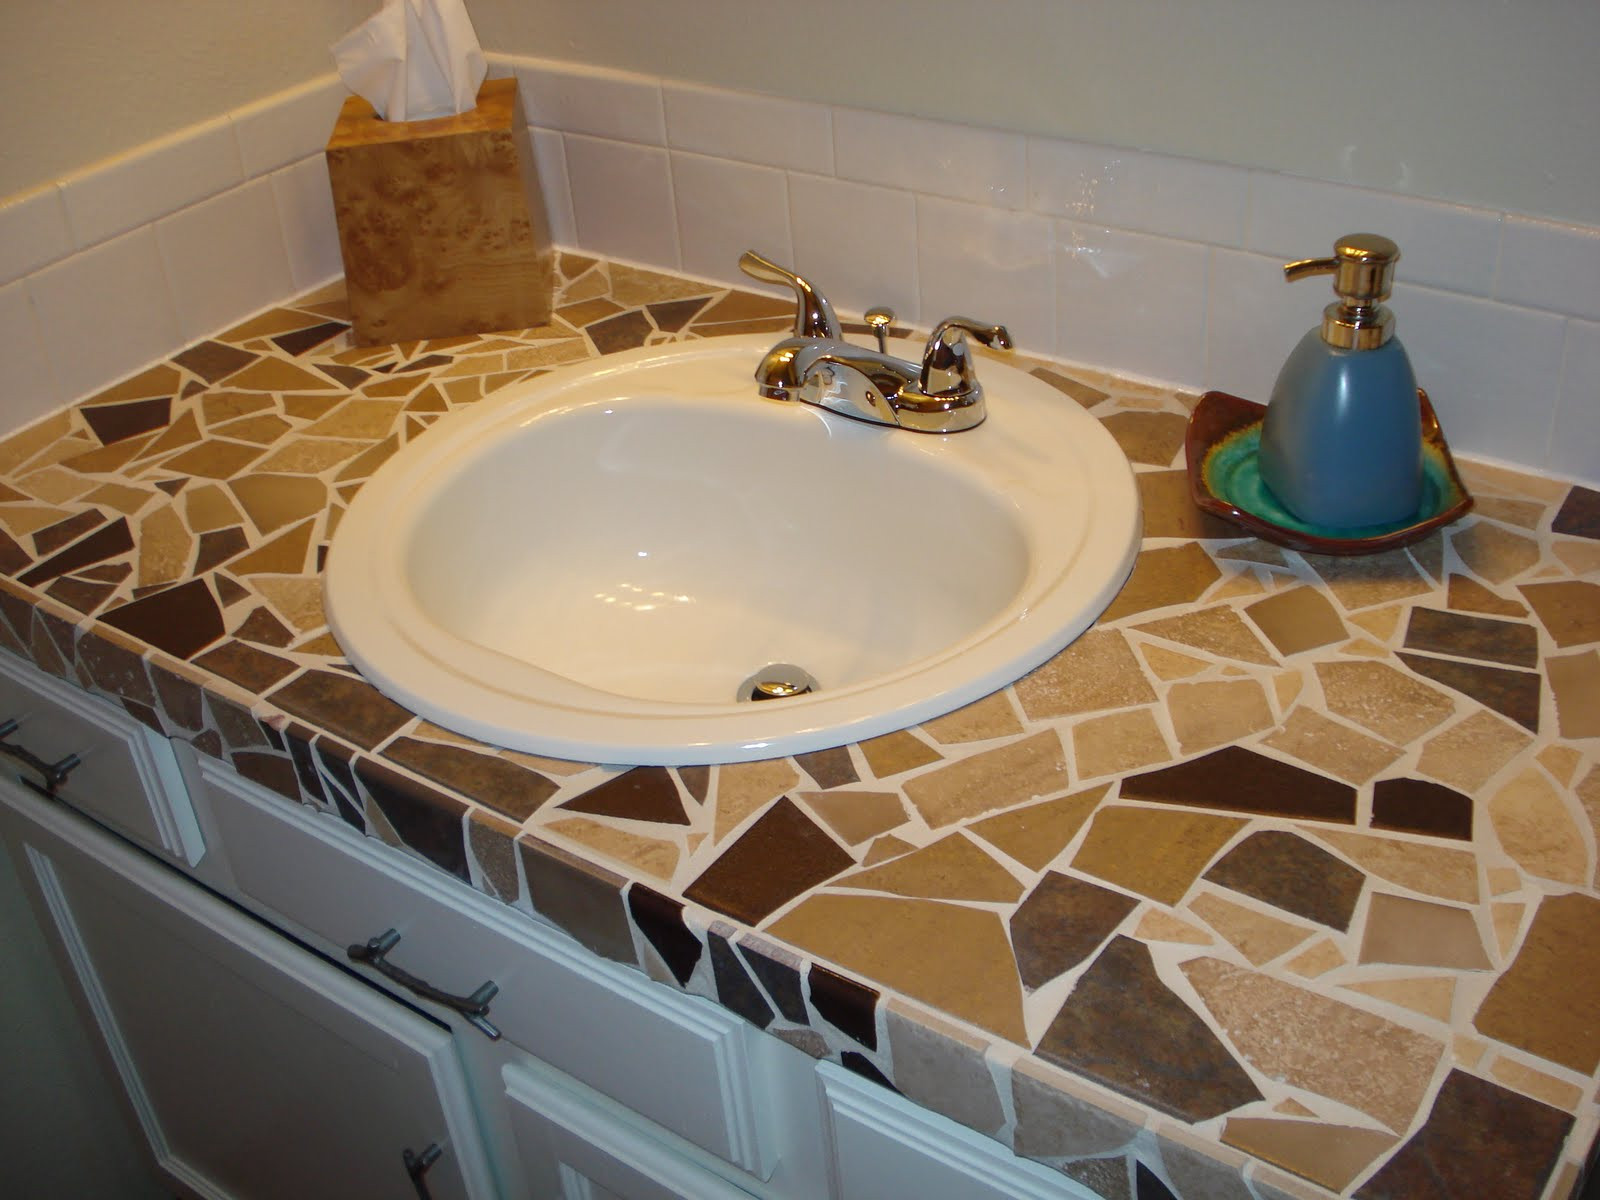 Bathroom Tile Countertops
 Enlightenment DIY Countertop Options under $500